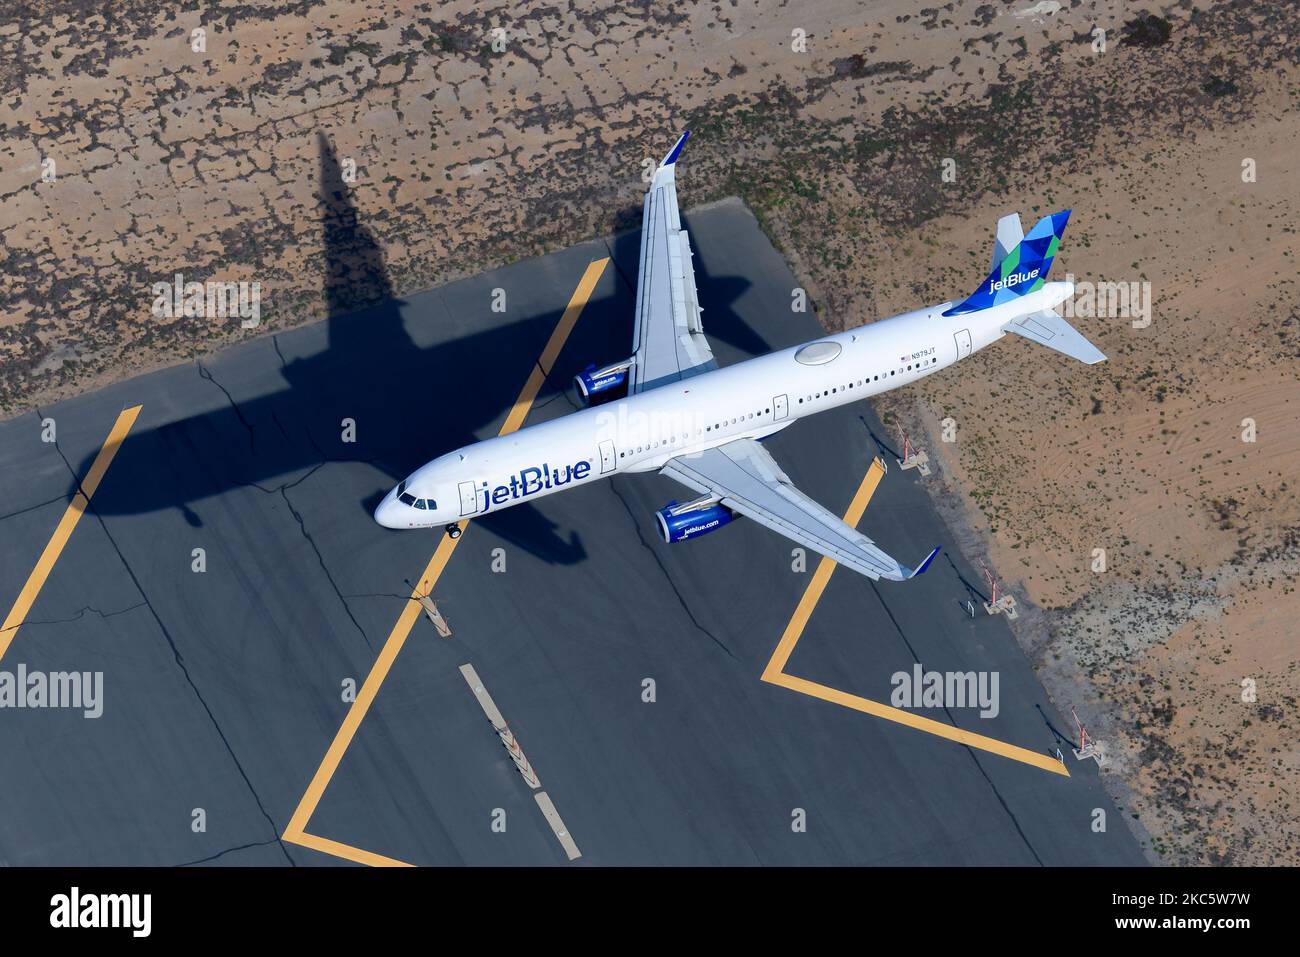 Aerolínea jetblue fotografías imágenes de alta resolución - Alamy